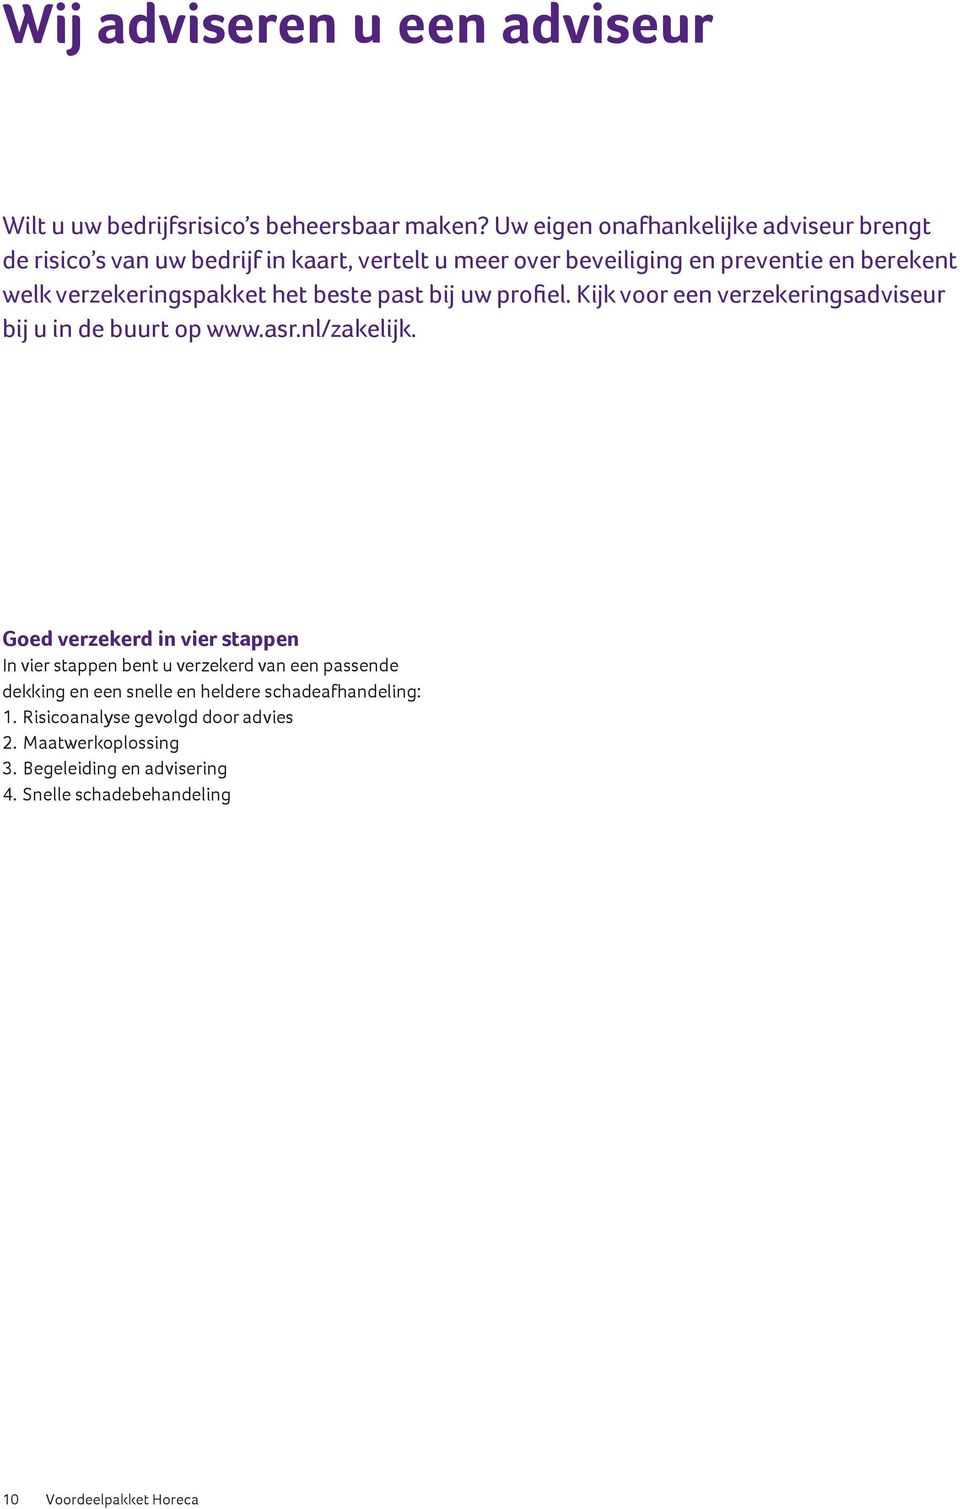 verzekeringspakket het beste past bij uw profiel. Kijk voor een verzekeringsadviseur bij u in de buurt op www.asr.nl/zakelijk.